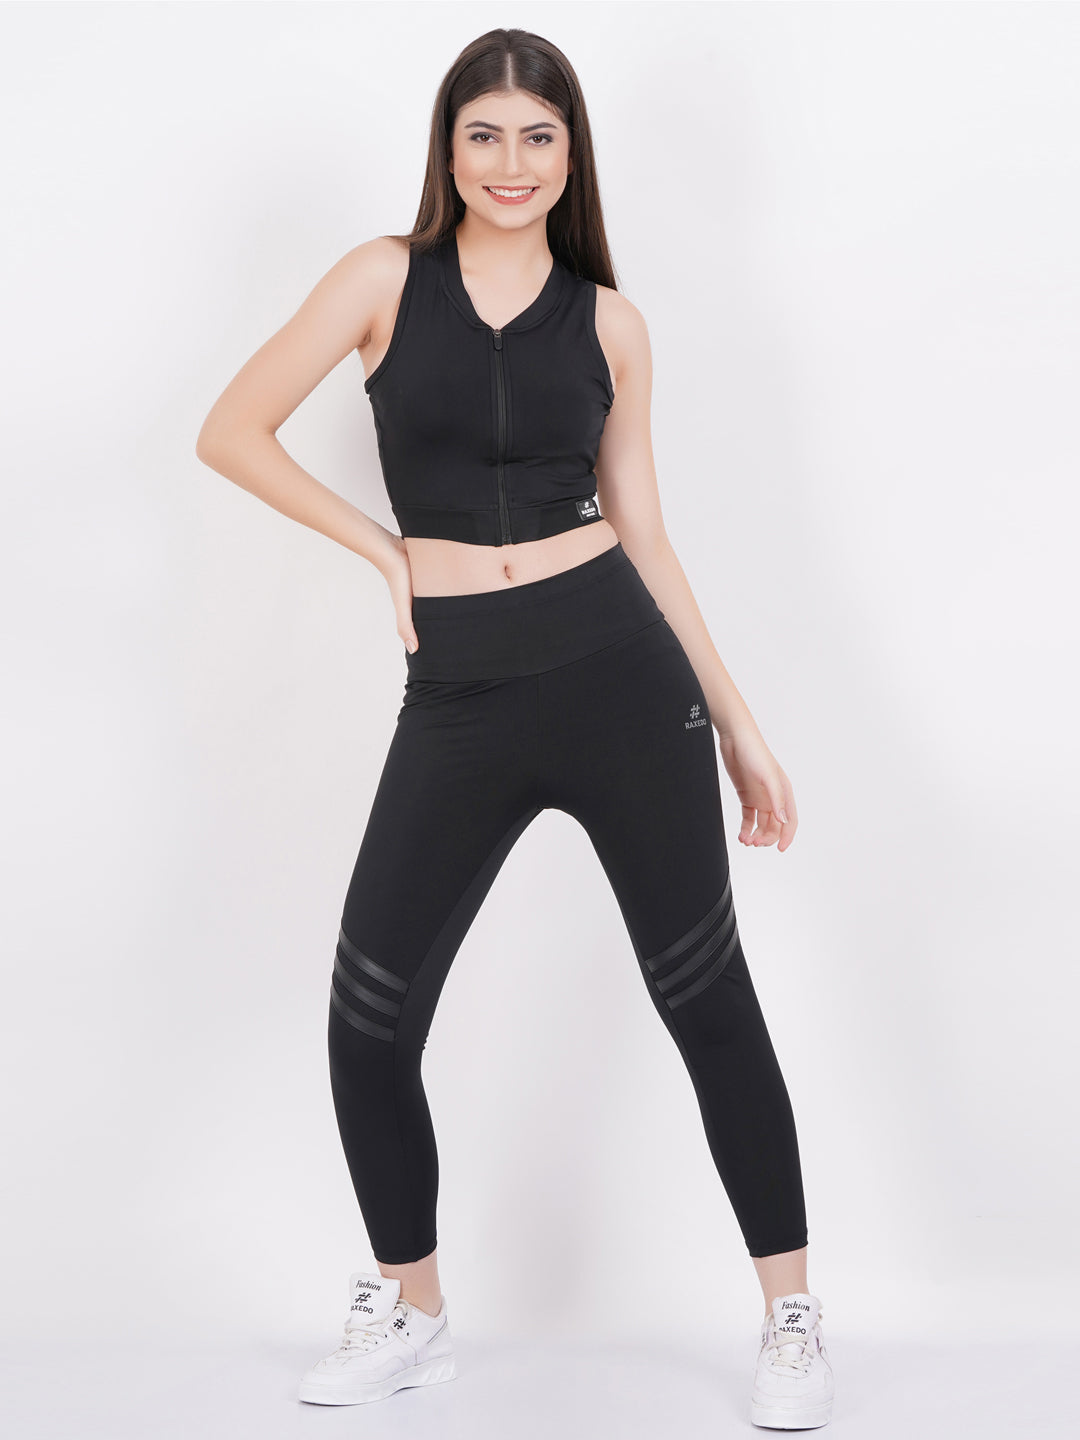 Buy Women's Activewear Sets  Activewear Sets Online – RAXEDO